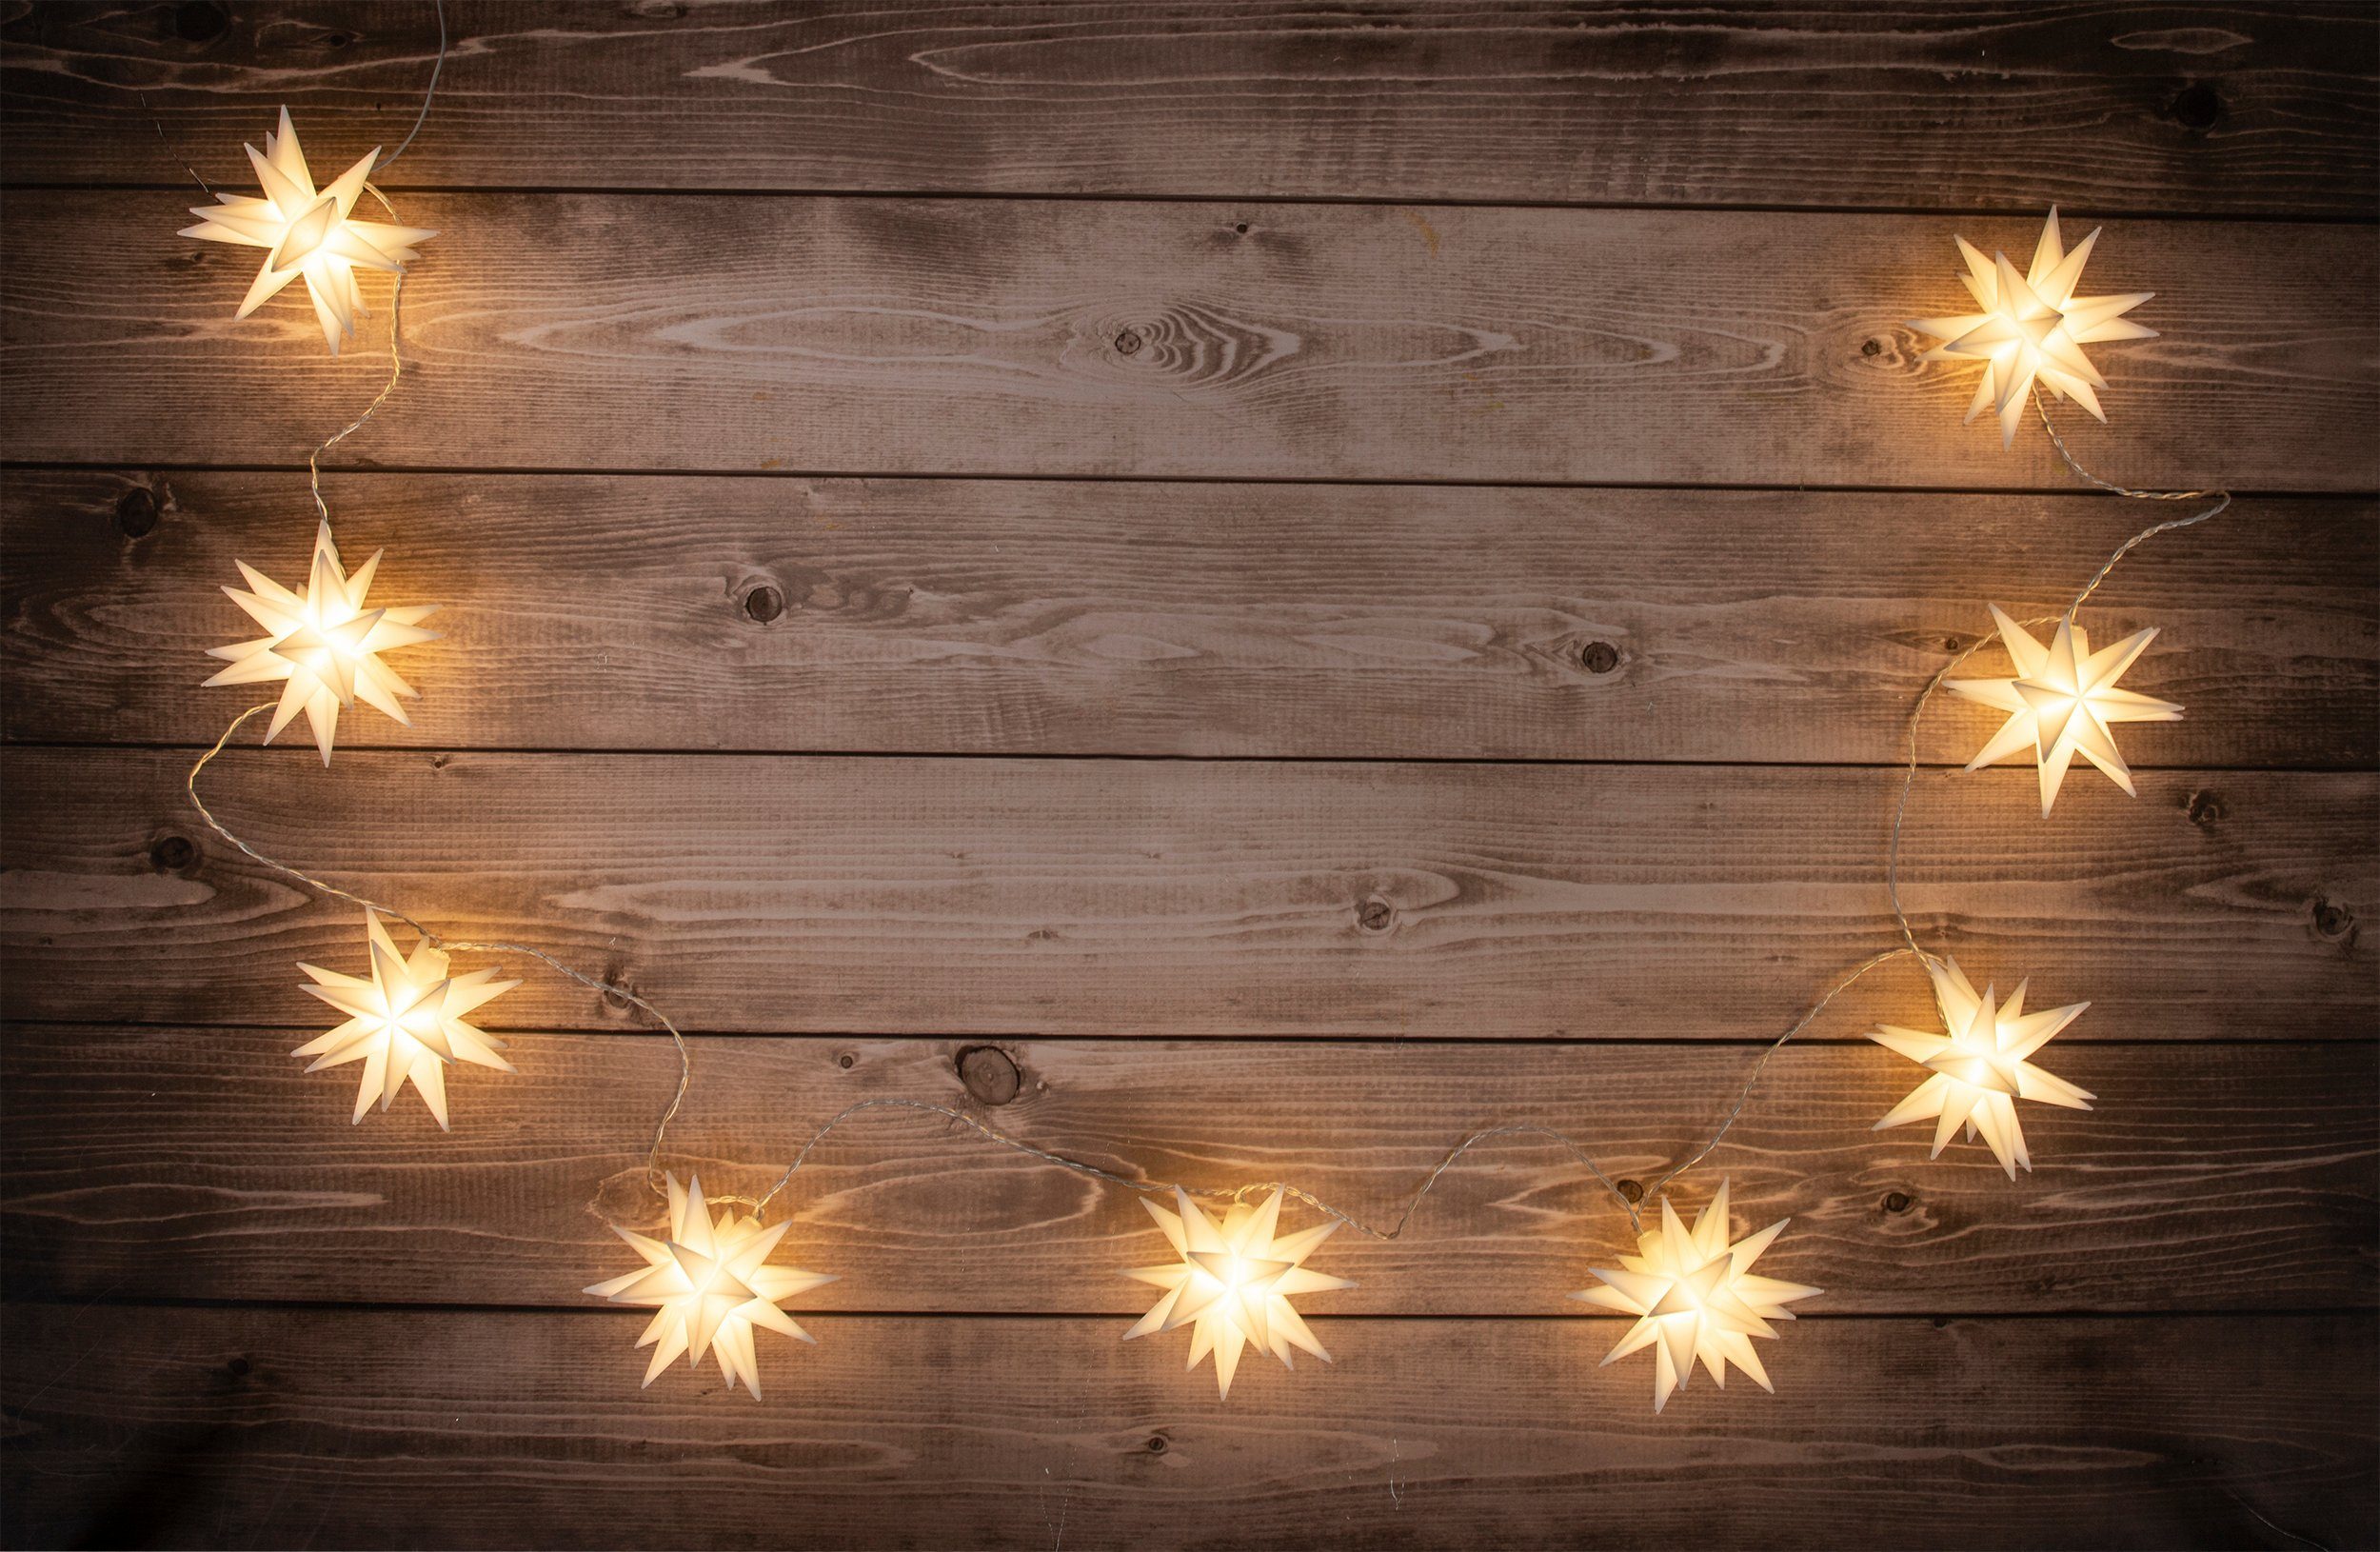 LED-Lichterkette näve LED-Weihnachtslichterkette weiß aussen, 3D-Sterne,Weihnachtsdeko 3D-Stern